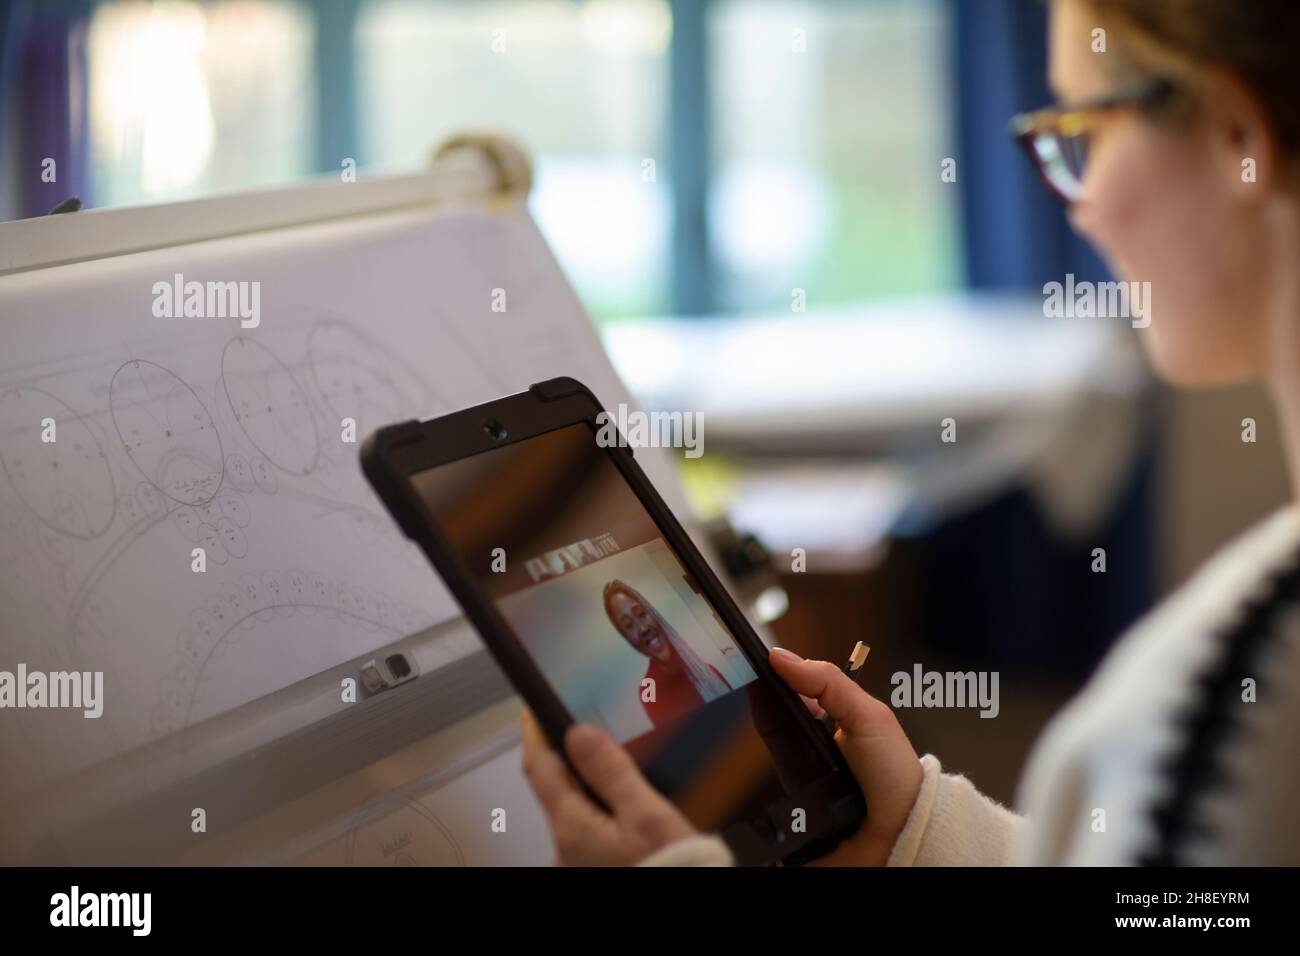 Vídeo de arquitecto femenino charlando con su compañero en una tableta digital Foto de stock